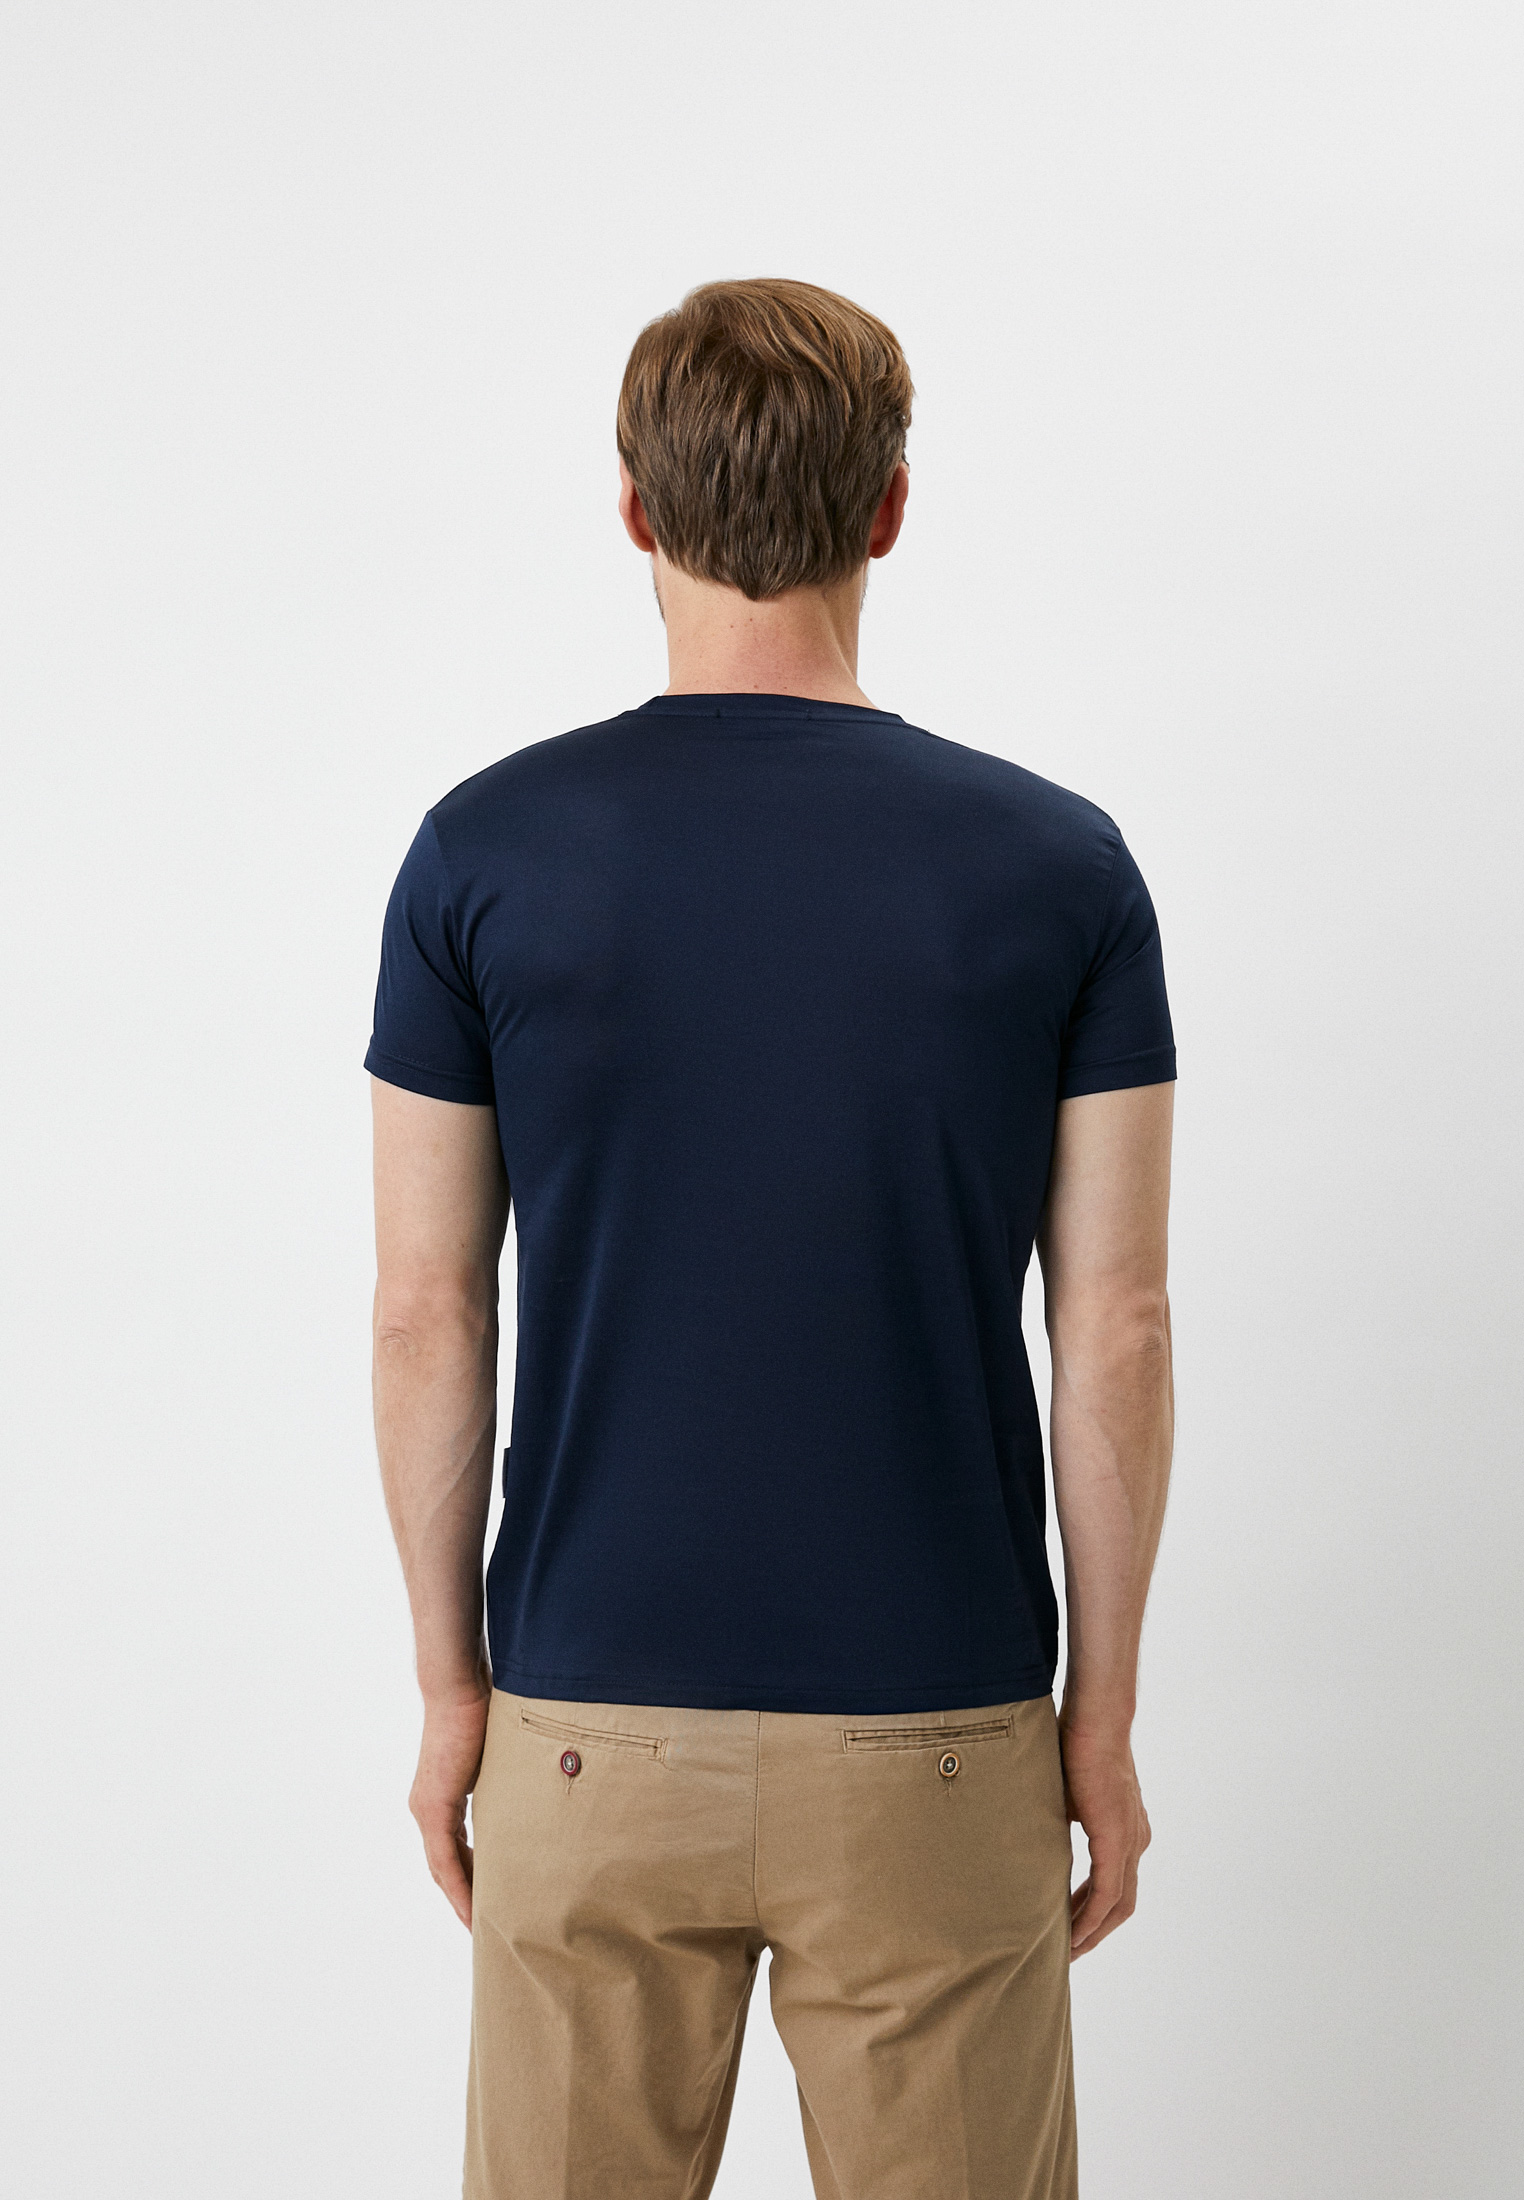 Мужская футболка Baldinini (Балдинини) M603: изображение 7